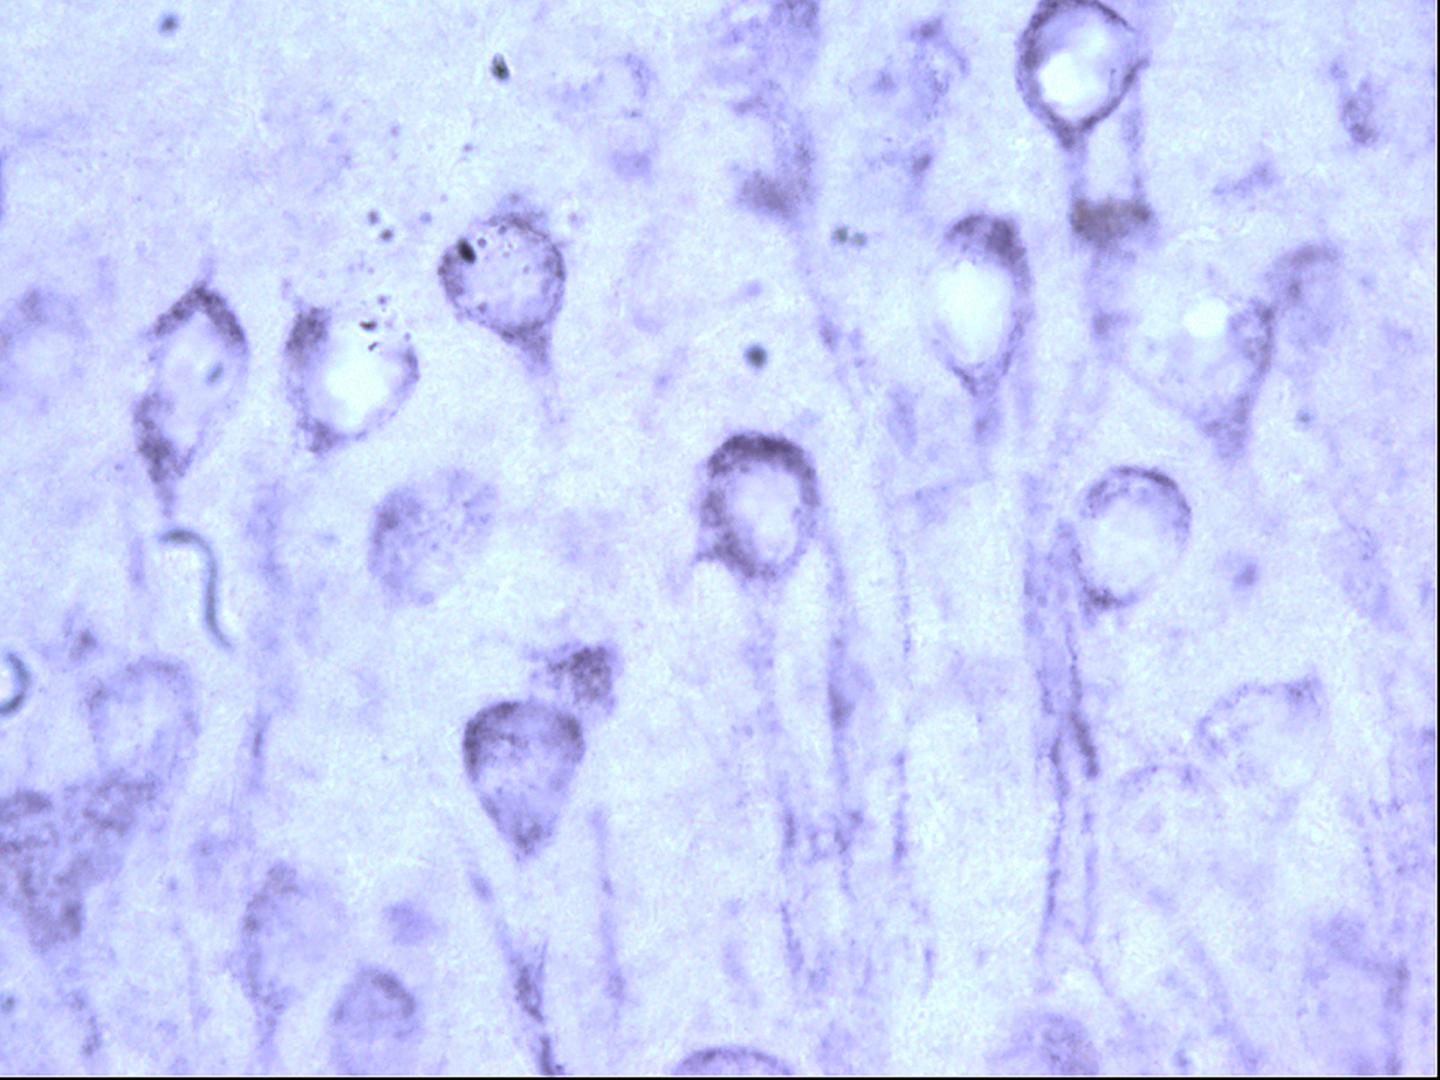 Microscopic image of tau pathology